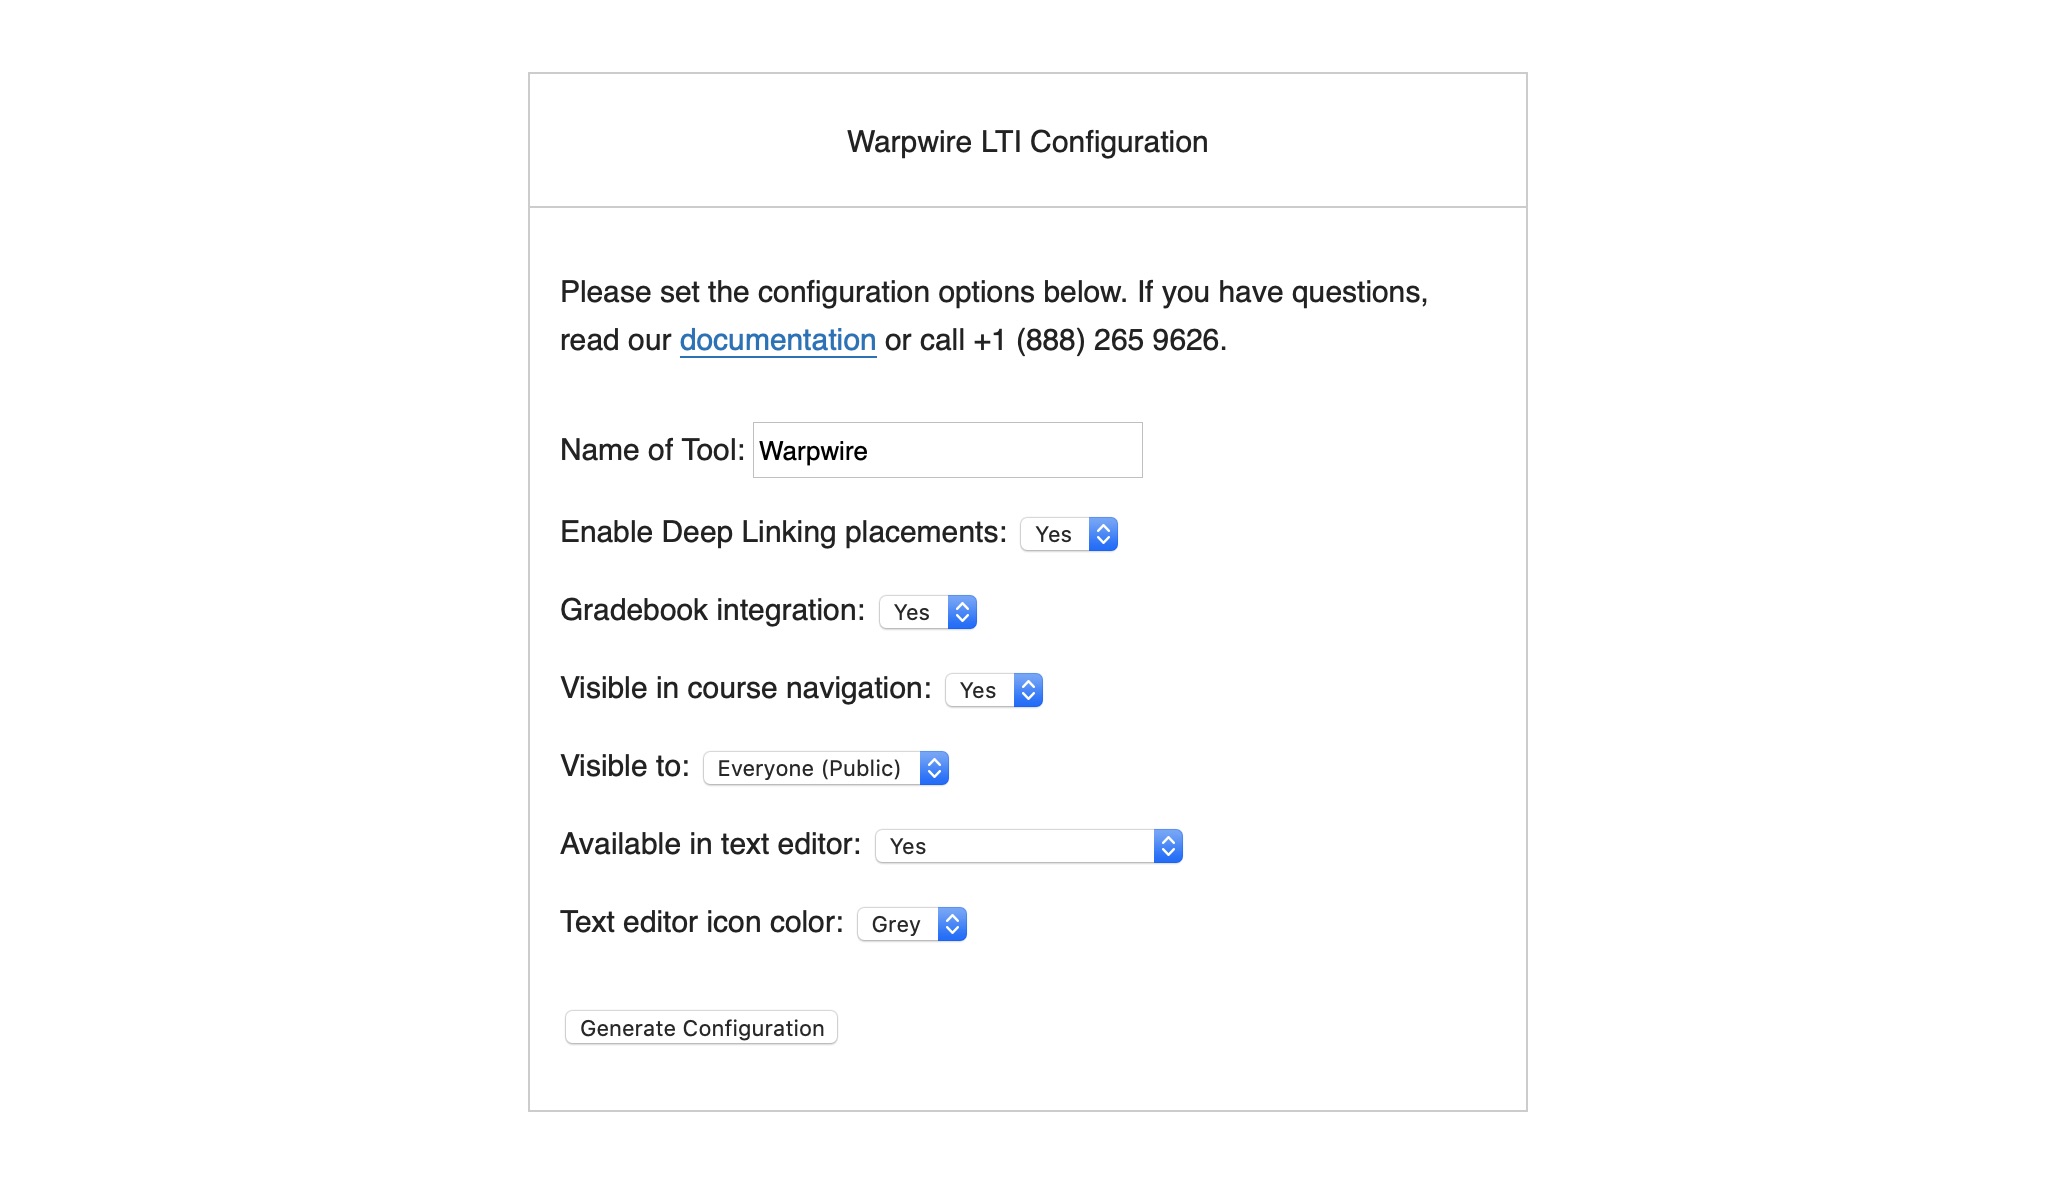 Warpwire LTI Configuration Wizard page